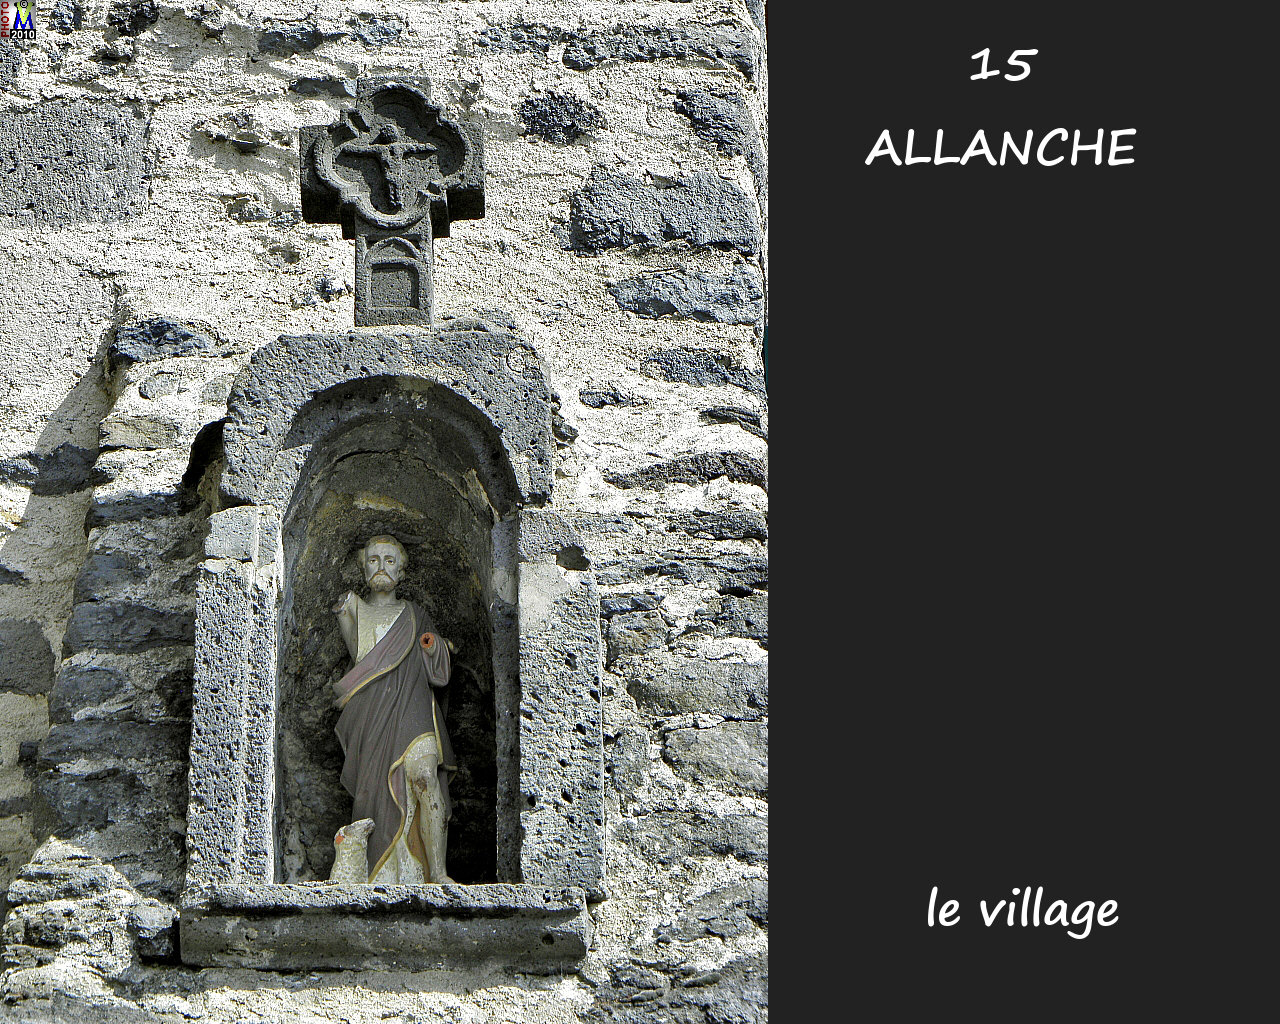 15ALLANCHE_village_152.jpg